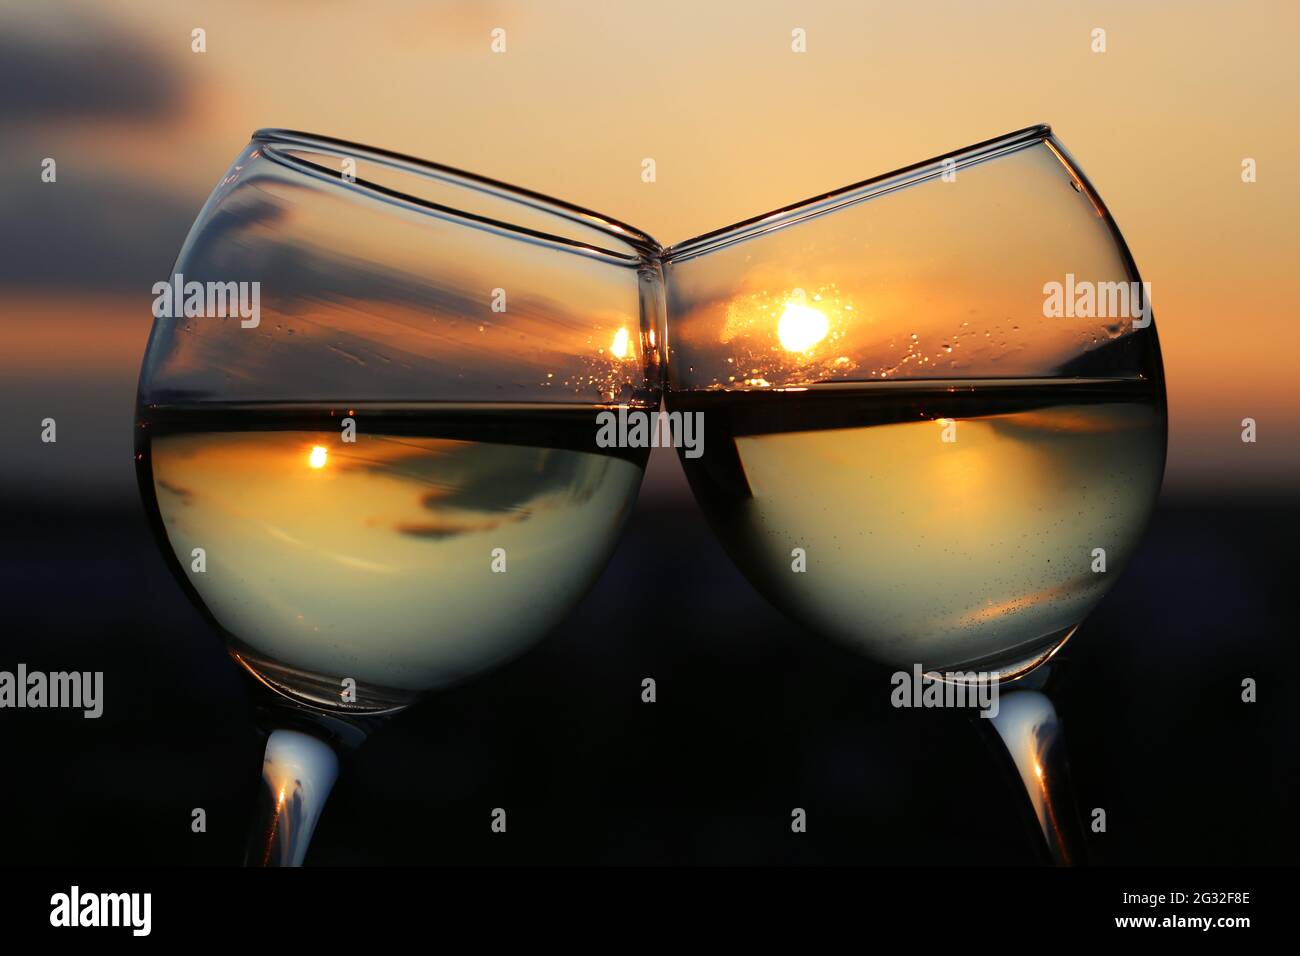 Zwei Gläser mit Weißwein auf Sonnenuntergangshintergrund, Abendsonne und Himmel spiegeln sich in einem Nebelglas. Konzept der Feier, romantischen Cocktail, Liebe Stockfoto